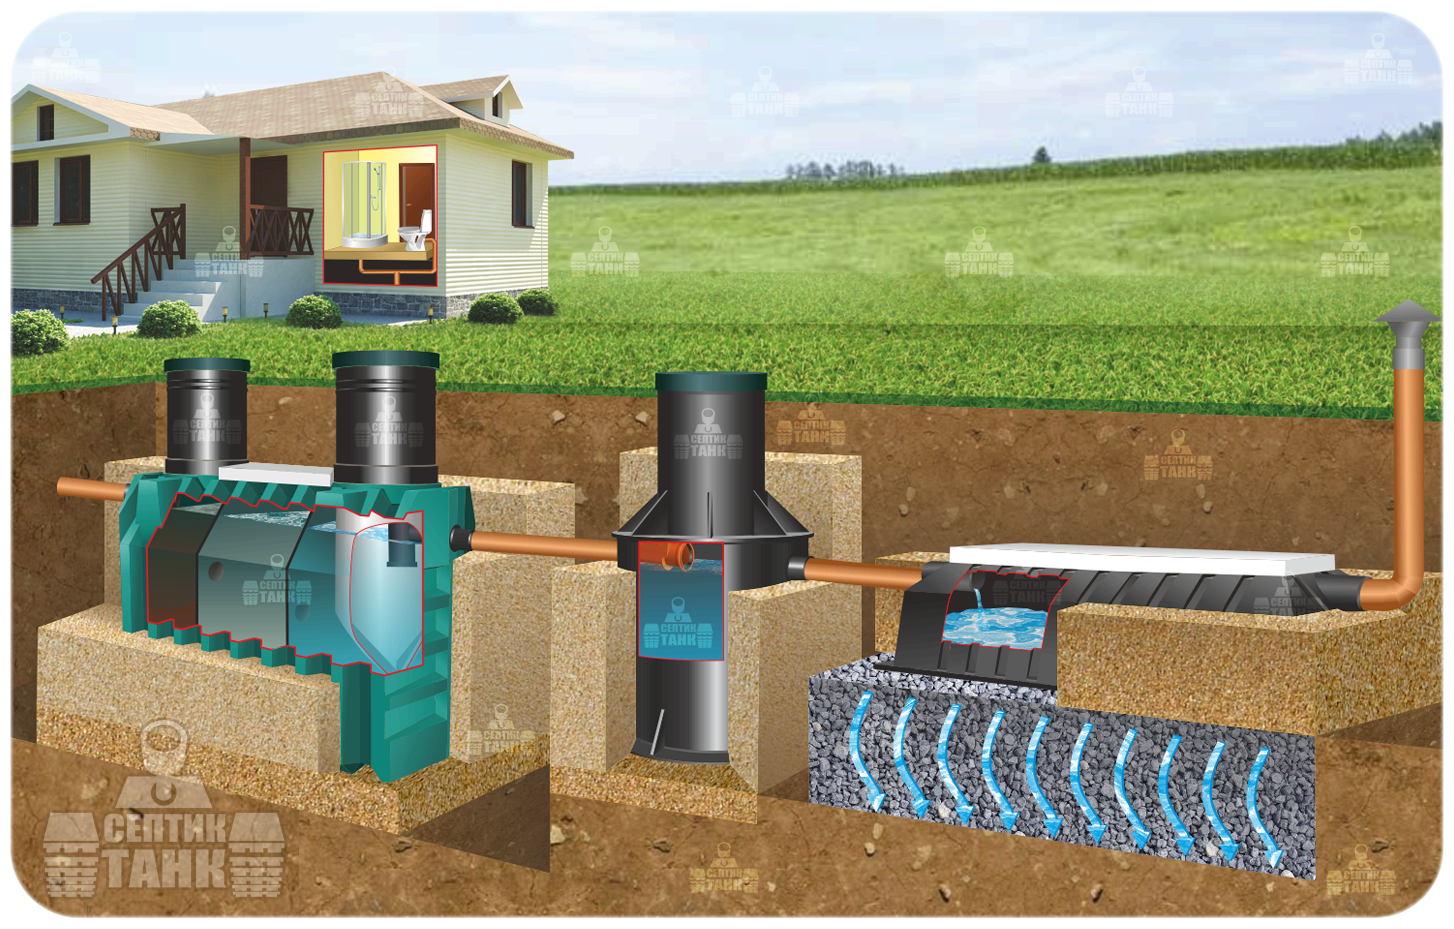 Установка канализации в частном доме своими руками: как установить канализацию, пошаговая инструкция